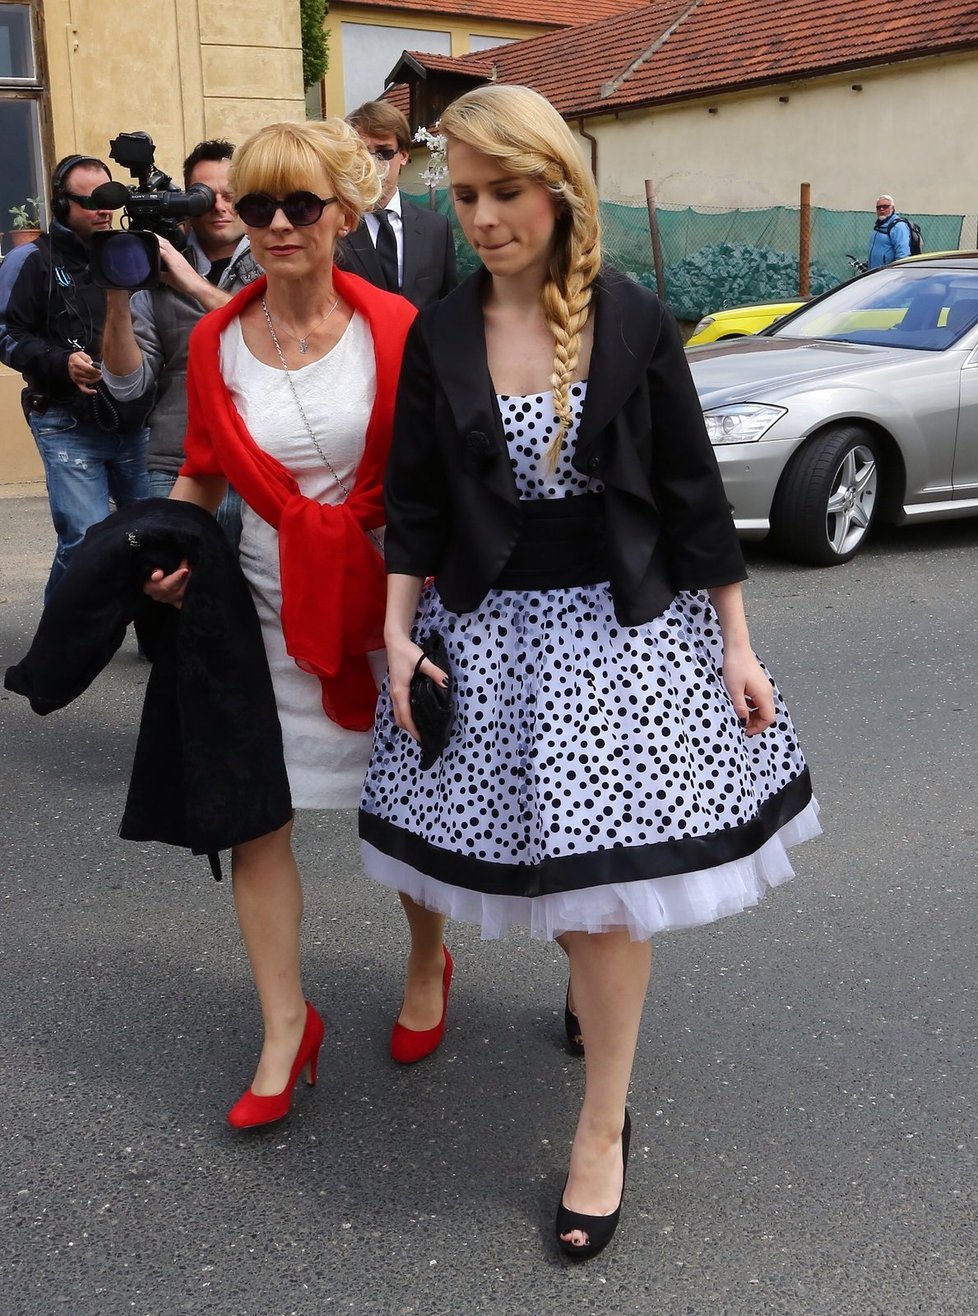 Dana Batulková v červenobílém outfitu a její dcera Mariana Prachařová. Obě dámy si nechaly udělat povedené účesy.